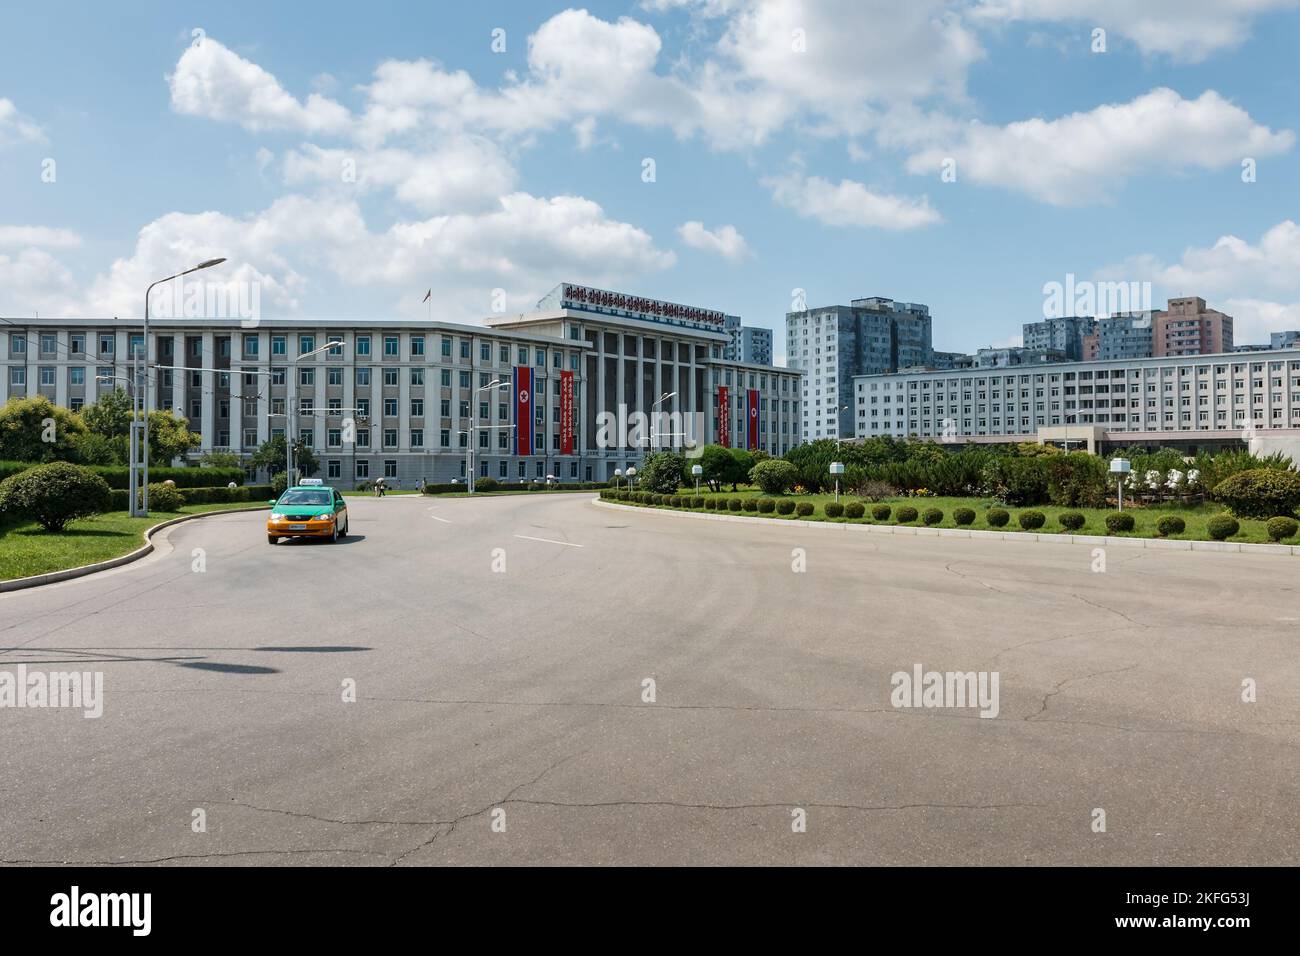 Pyongyang, Corée du Nord - 27 juillet 2014 : Commission de planification d'État près de l'Arc de Triomphe à Pyongyang. Rue Moranbong Banque D'Images